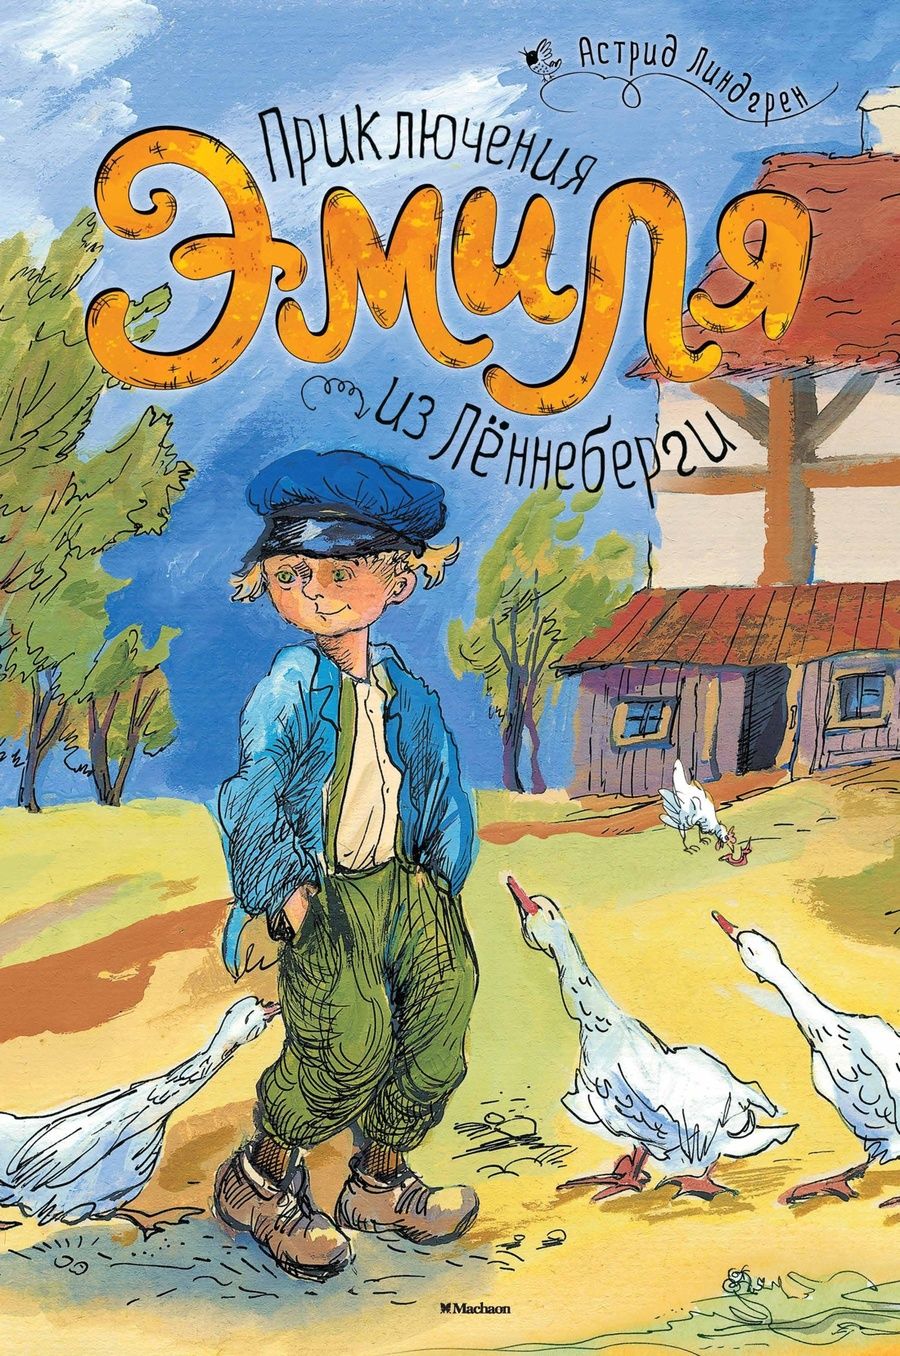 Обложка книги "Линдгрен: Приключения Эмиля из Лённеберги"